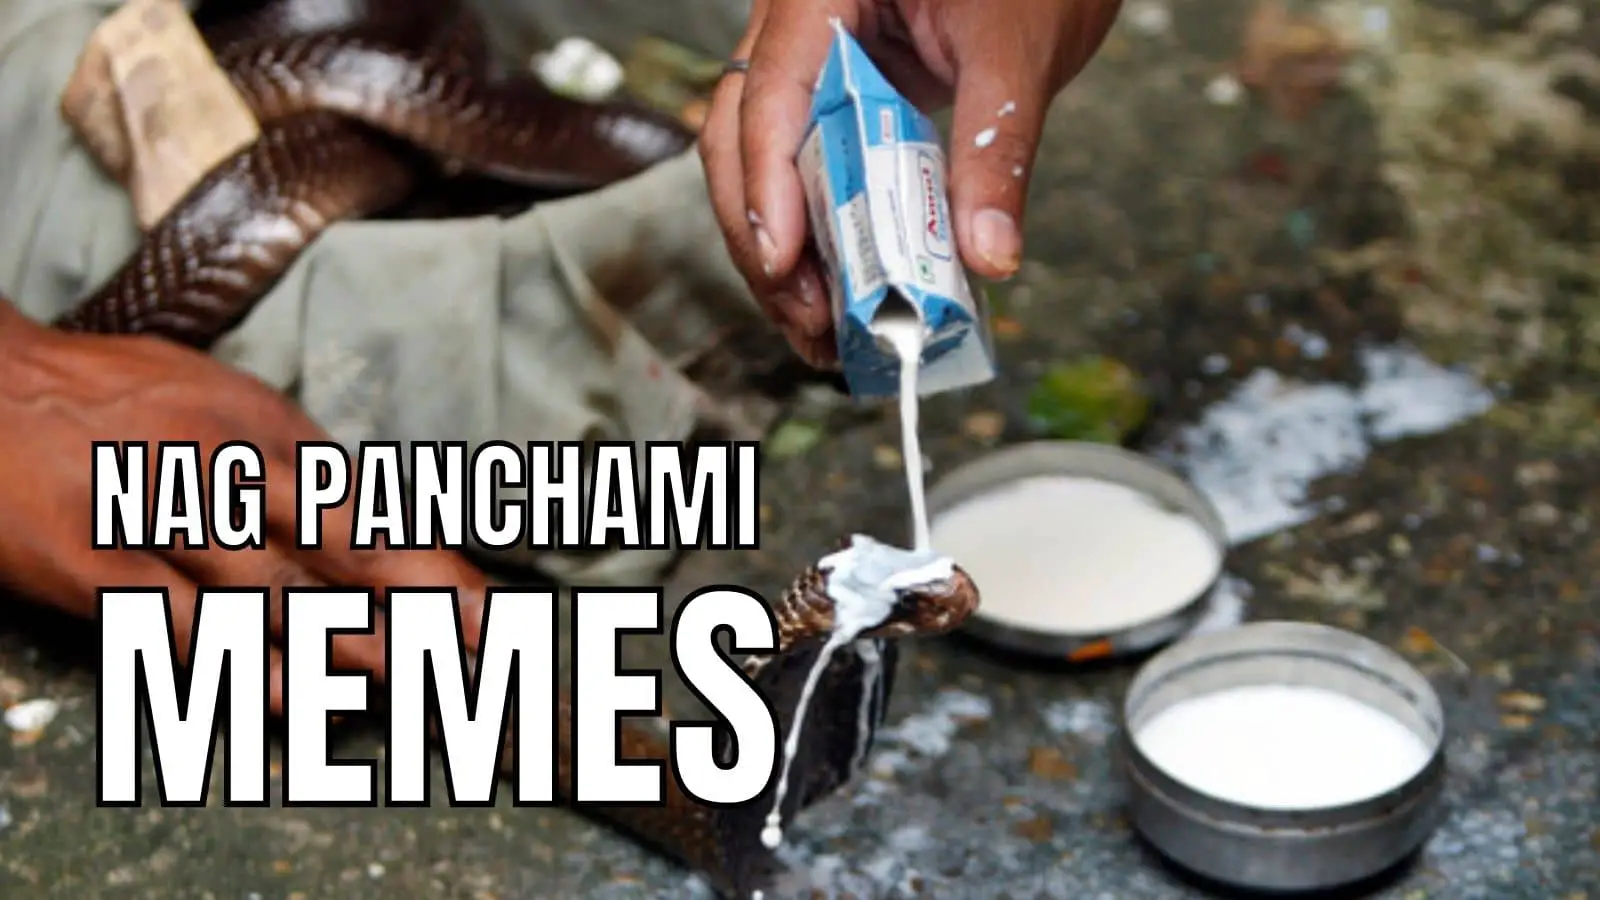 Nag Panchami Memes and Jokes on Snakes